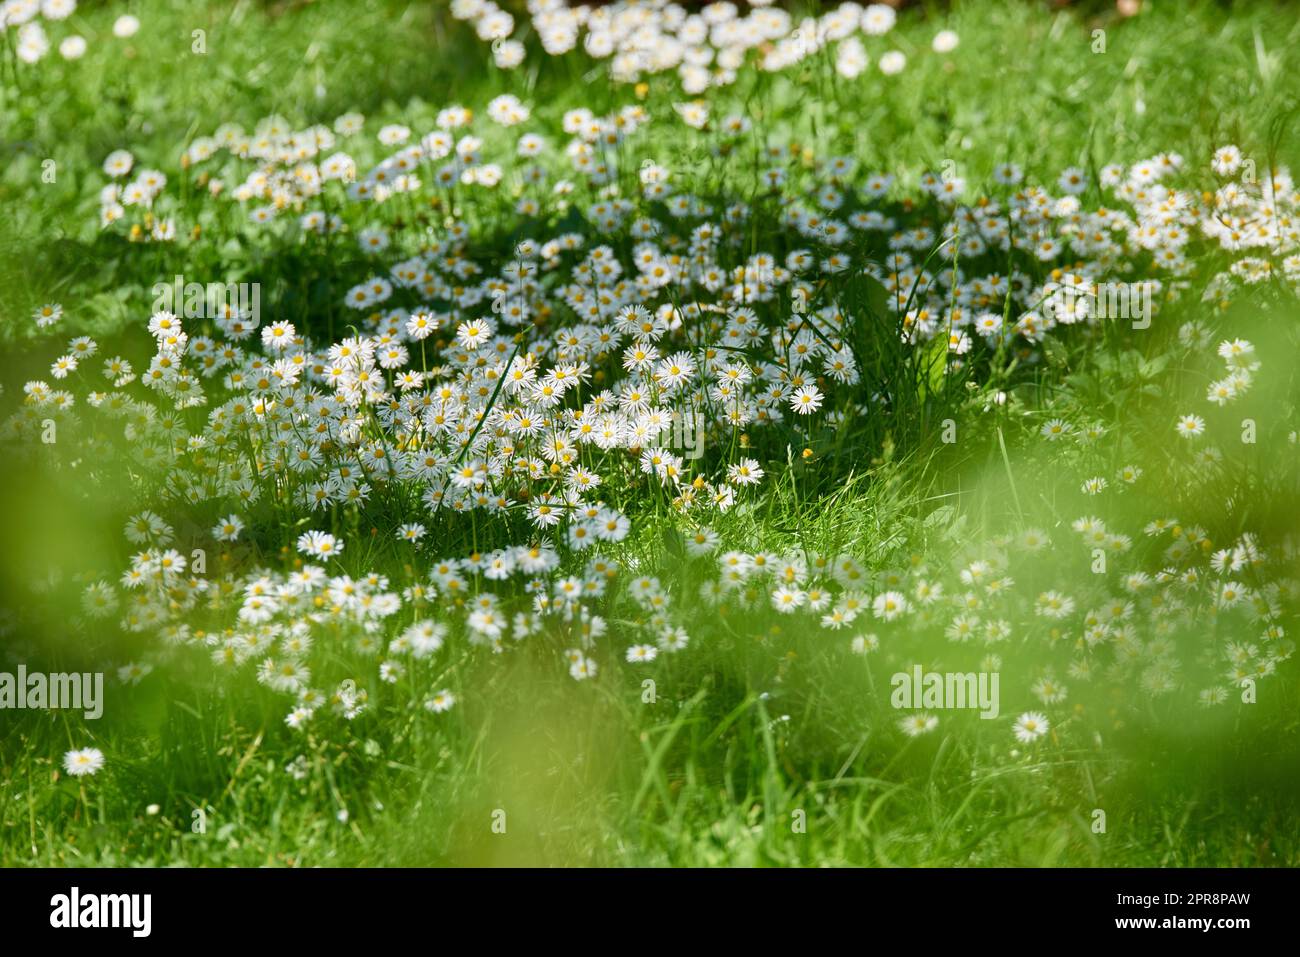 Eine wunderschöne Wiese im Frühling voller blühender Gänseblümchen mit weißer gelber Blüte und grünem Gras. Eine Wiese voller blühender Gänseblümchen und Gras, wilde Gänseblümchen auf einem Feld an einem sonnigen Tag. Stockfoto